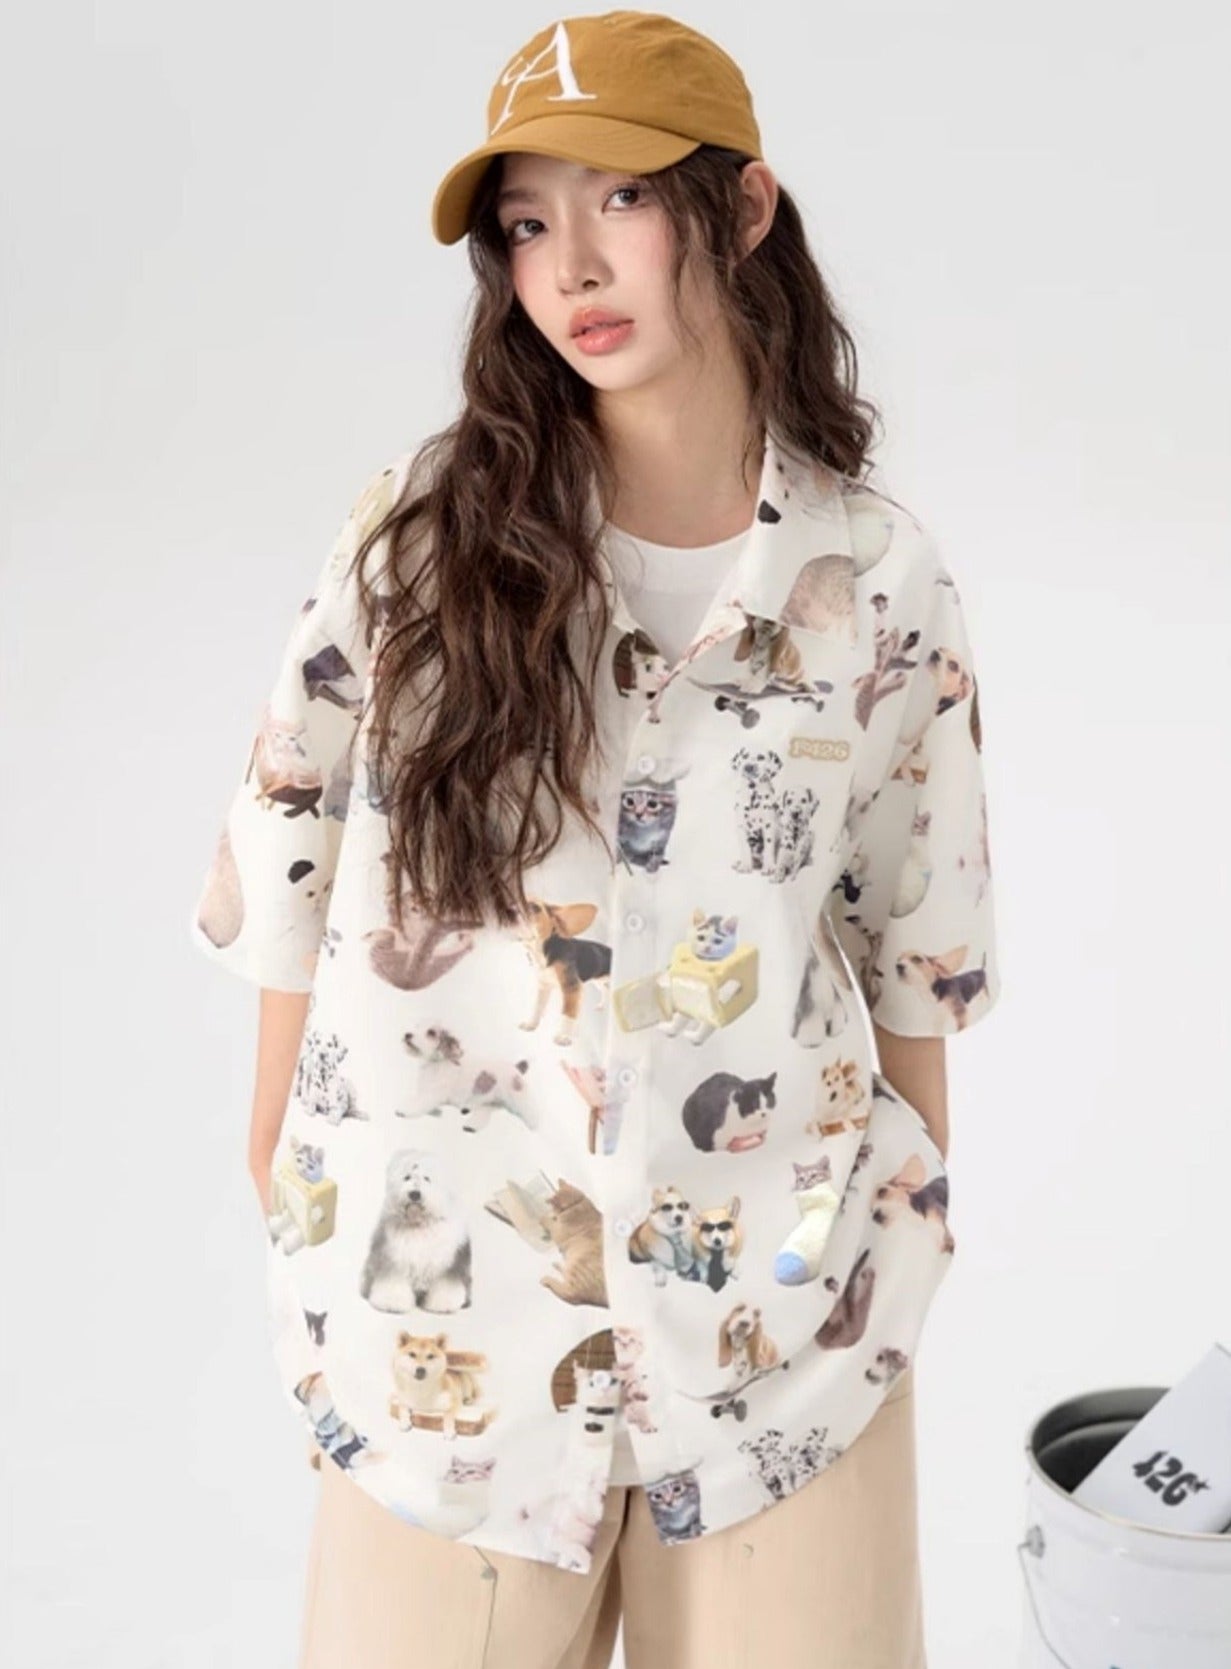 Fun Spoof Cat and Dog Print Shirt